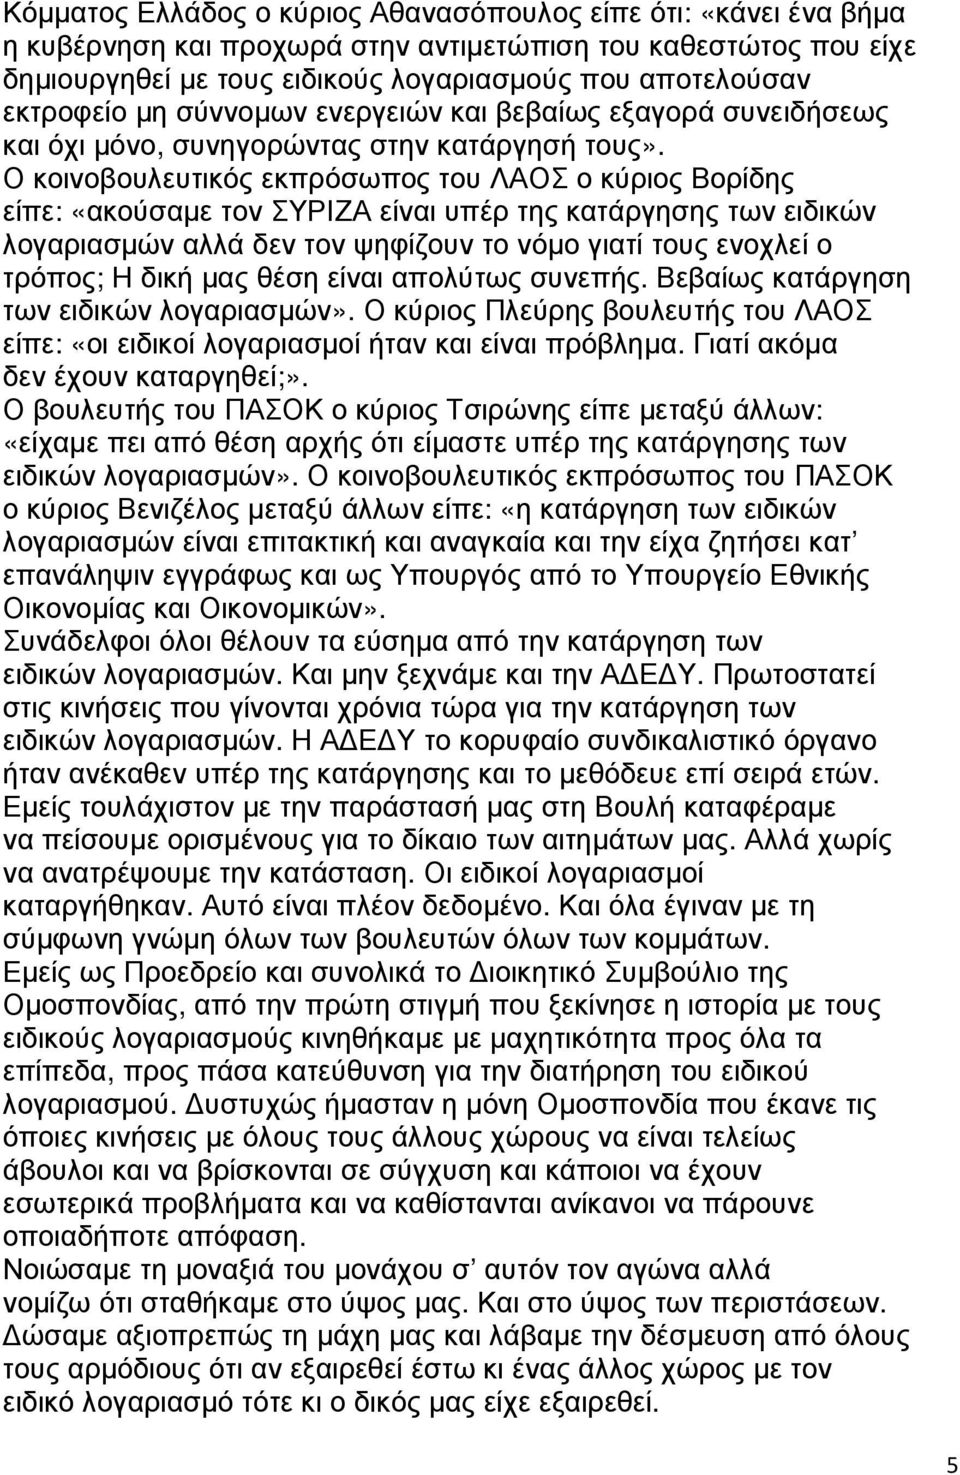 Ο κοινοβουλευτικός εκπρόσωπος του ΛΑΟΣ ο κύριος Βορίδης είπε: «ακούσαµε τον ΣΥΡΙΖΑ είναι υπέρ της κατάργησης των ειδικών λογαριασµών αλλά δεν τον ψηφίζουν το νόµο γιατί τους ενοχλεί ο τρόπος; Η δική